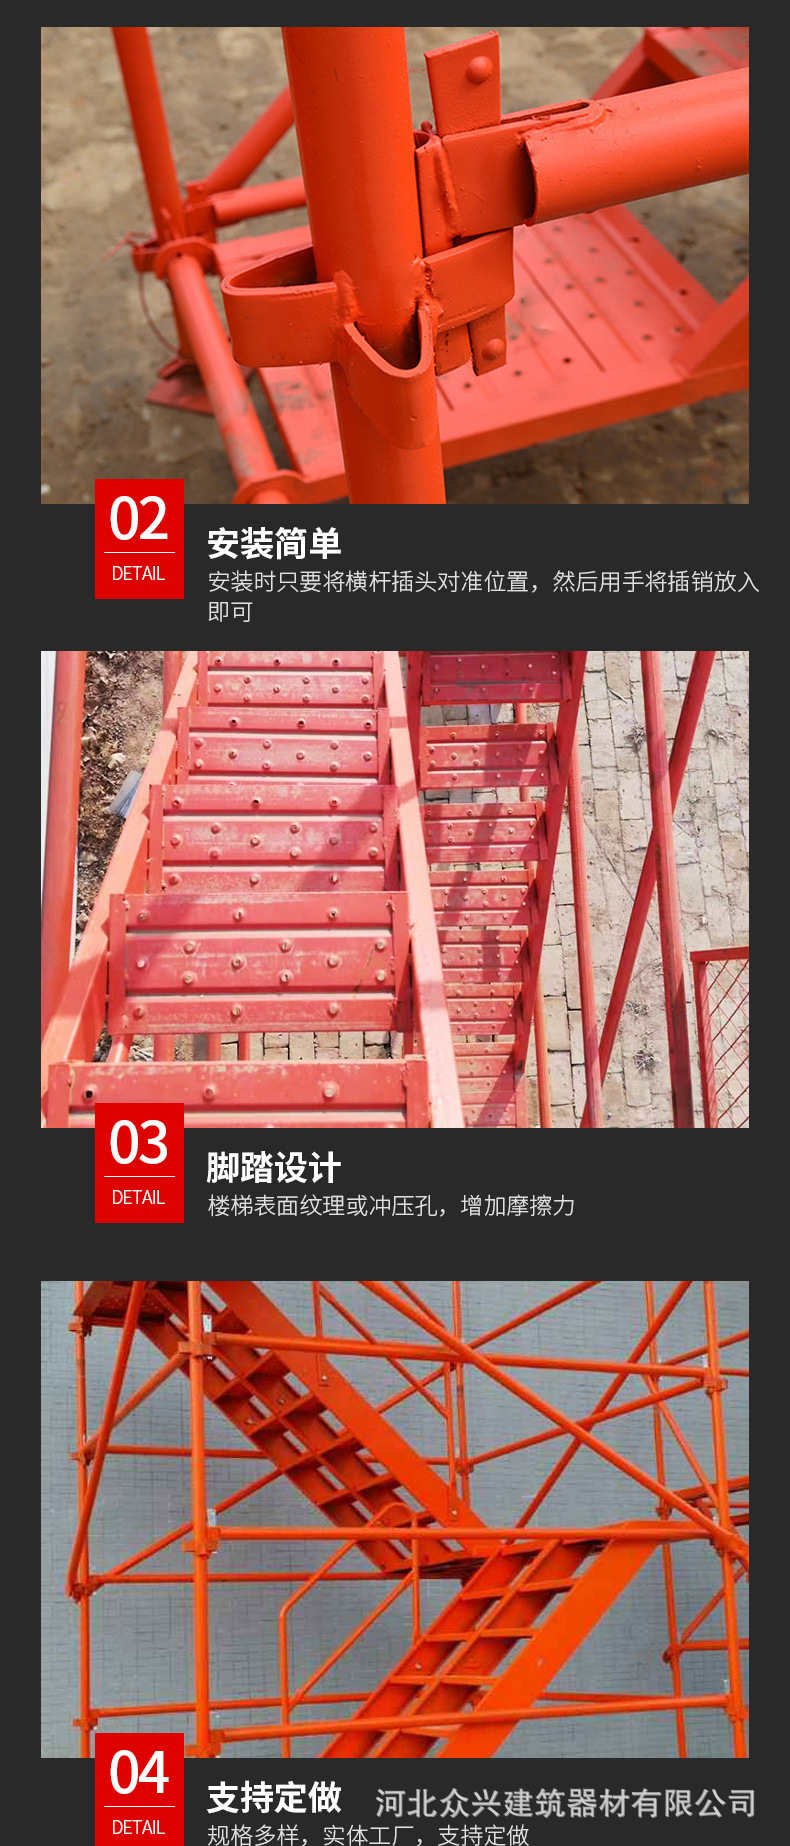 安全爬梯,桥梁爬梯,建筑施工安全爬梯,工地组装式安全爬梯